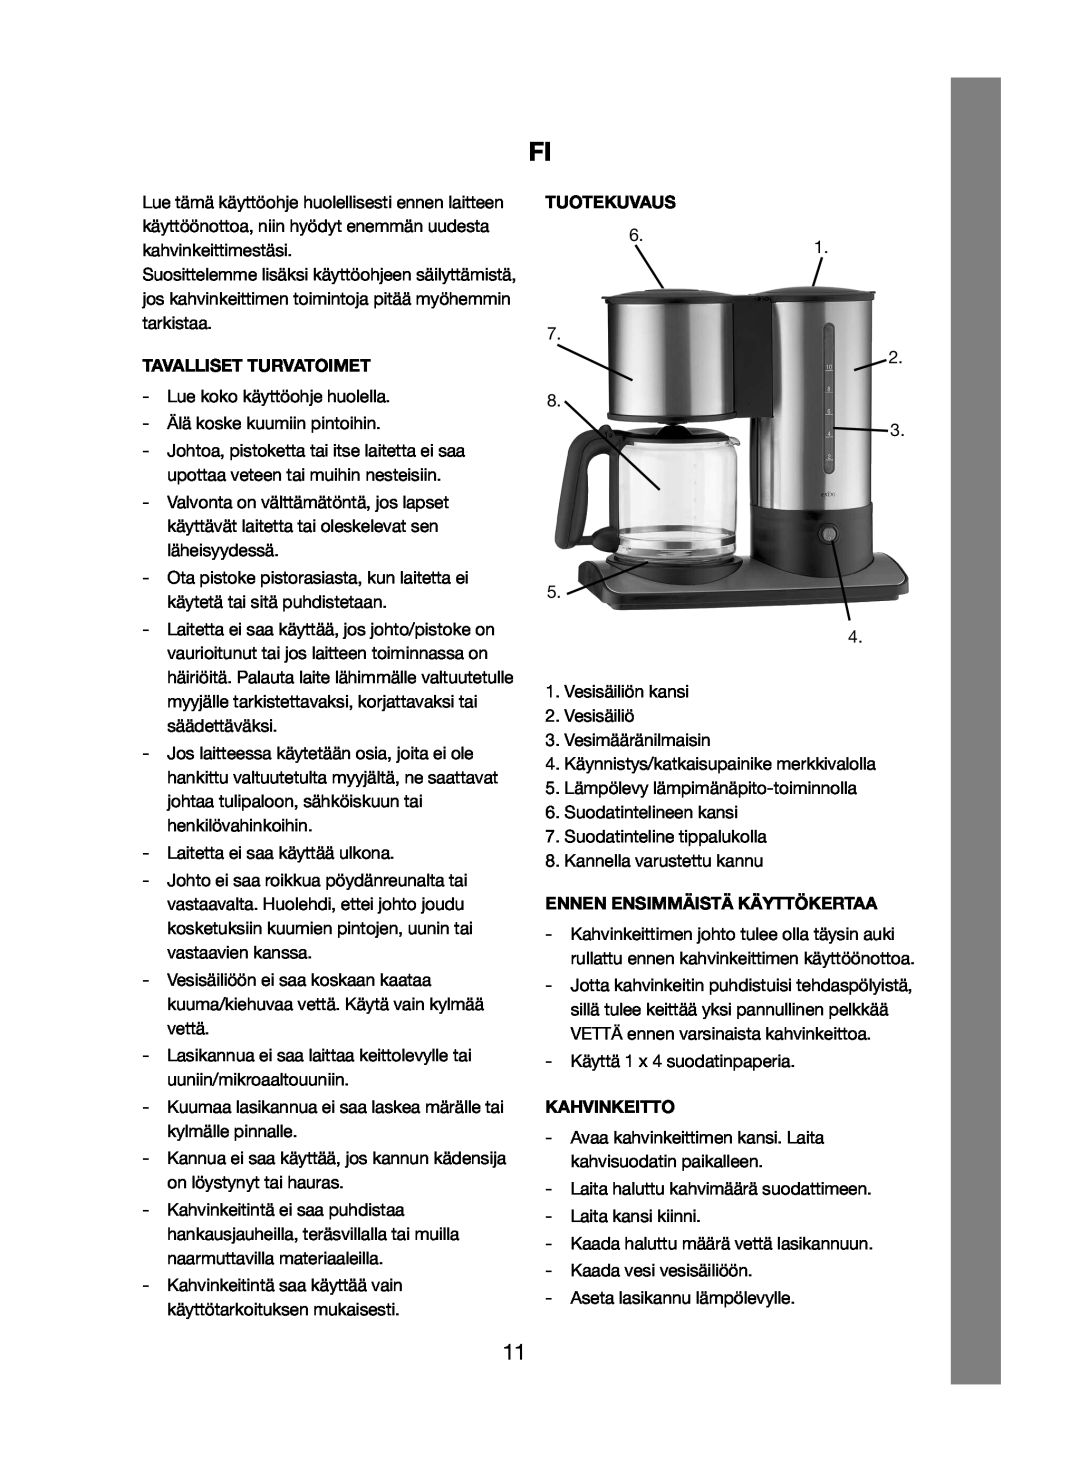 Melissa 245-060 manual Tuotekuvaus, Tavalliset Turvatoimet, Ennen Ensimmäistä Käyttökertaa, Kahvinkeitto 